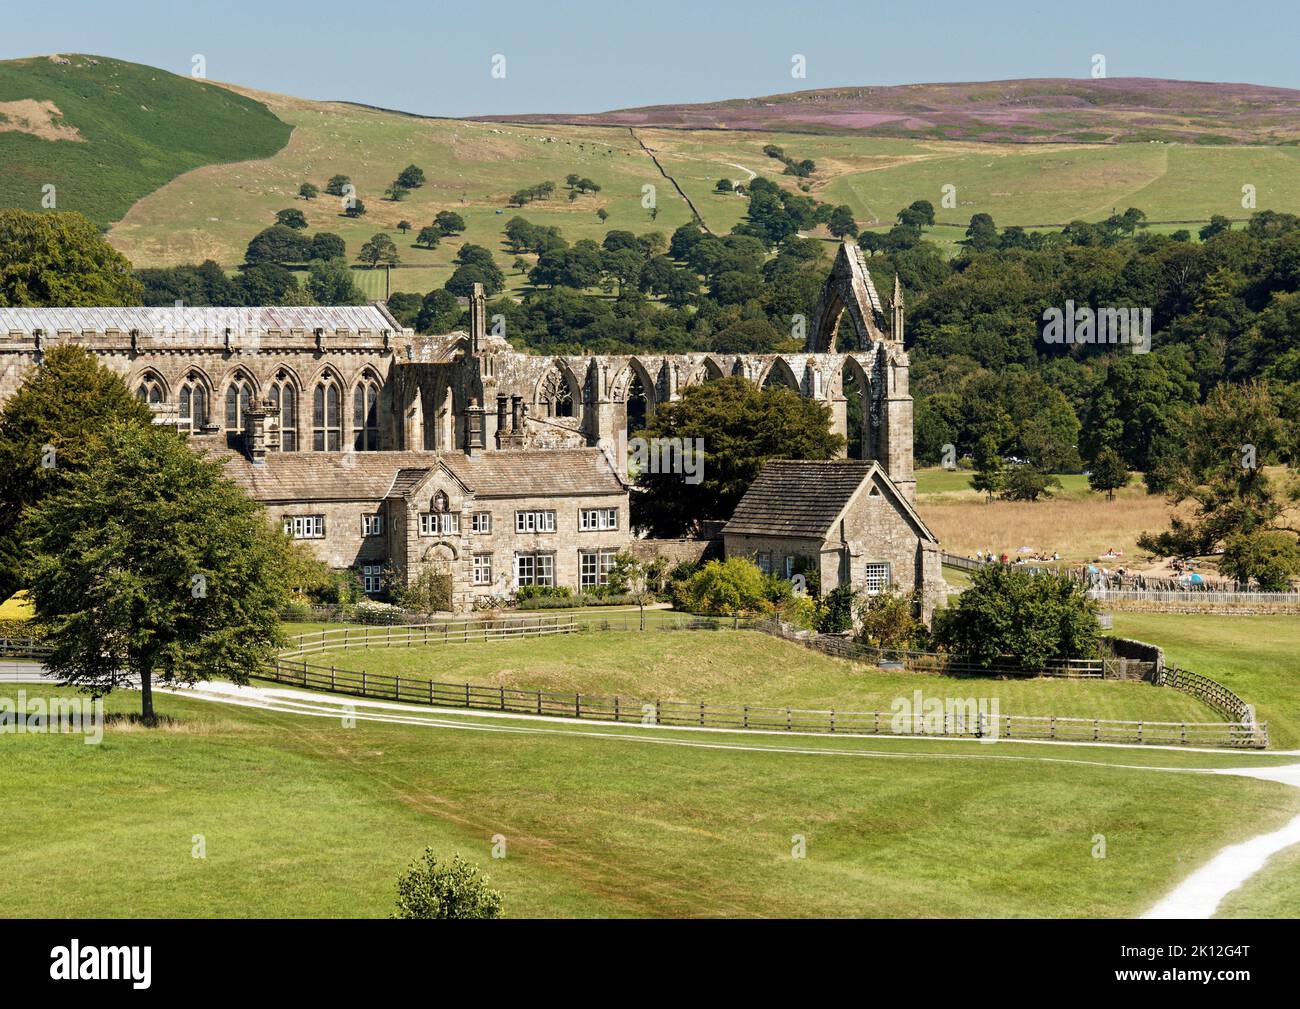 L'Abbazia di Bolton a Wharfedale, nel North Yorkshire, Inghilterra, prende il nome dalle rovine di un monastero agostiniano del 12th° secolo, ora conosciuto come il Priorato di Bolton. Foto Stock